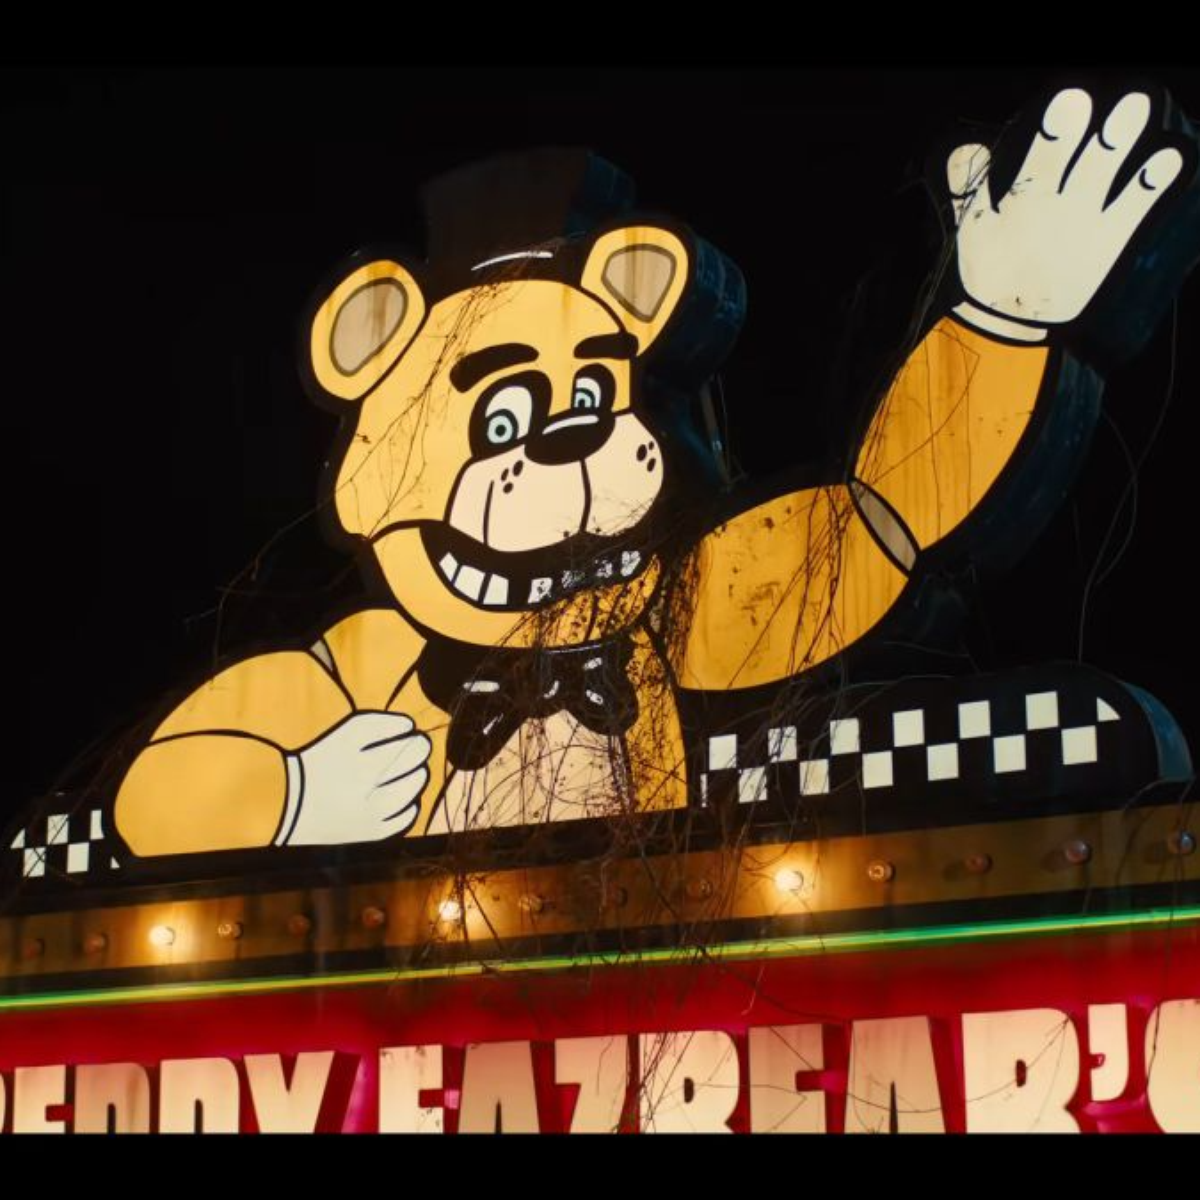 Filme de Five Nights at Freddy's recebe data de lançamento